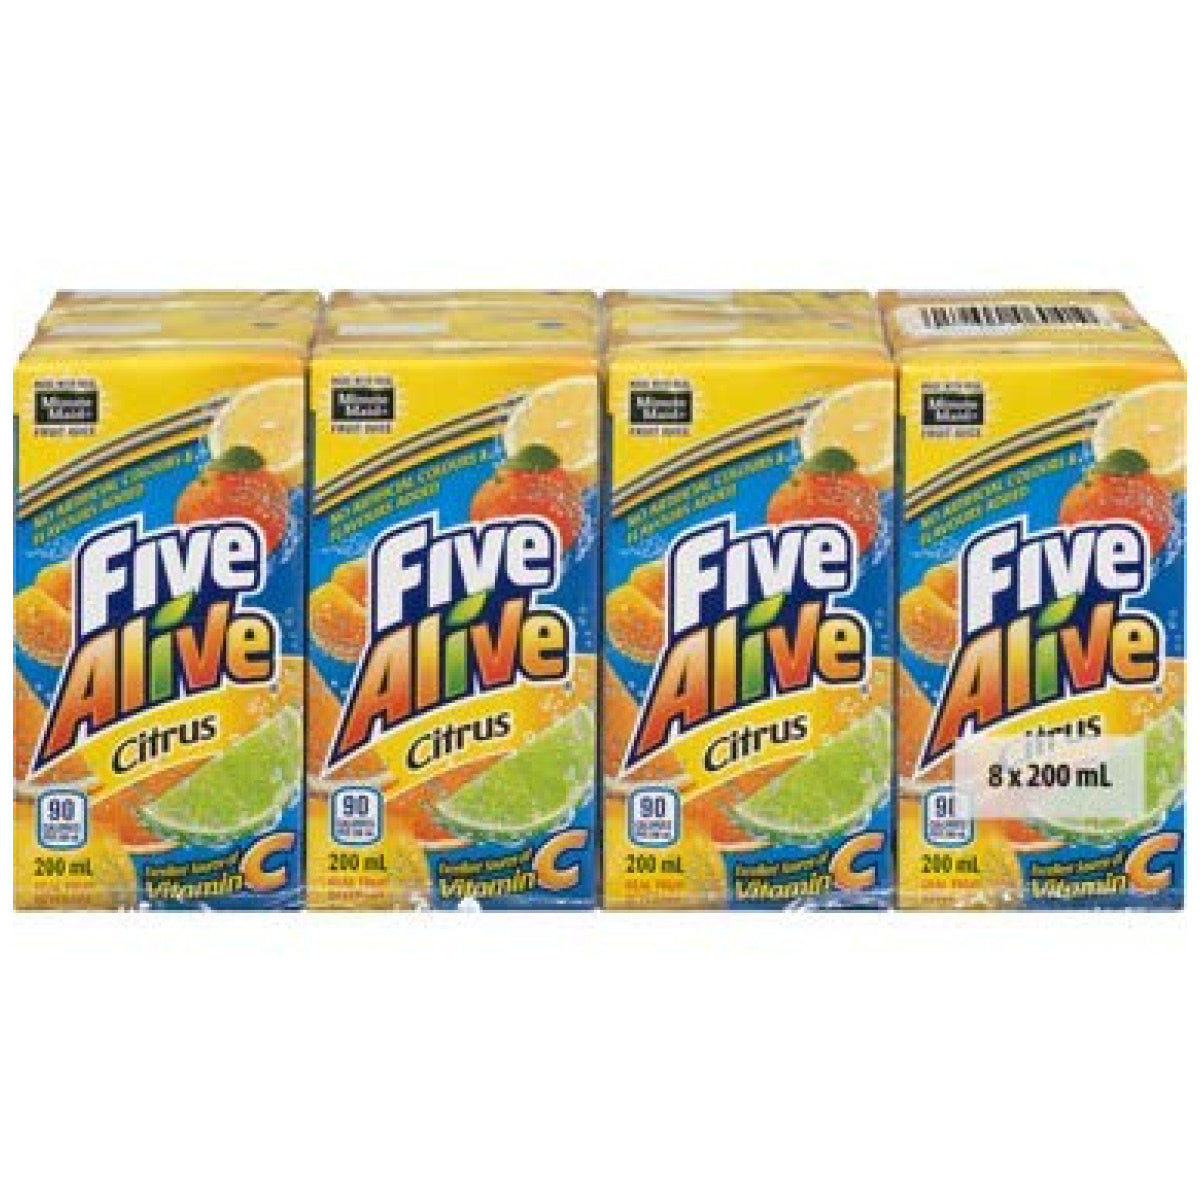 Five Alive Citrus Juice Boxes, 8x200ml